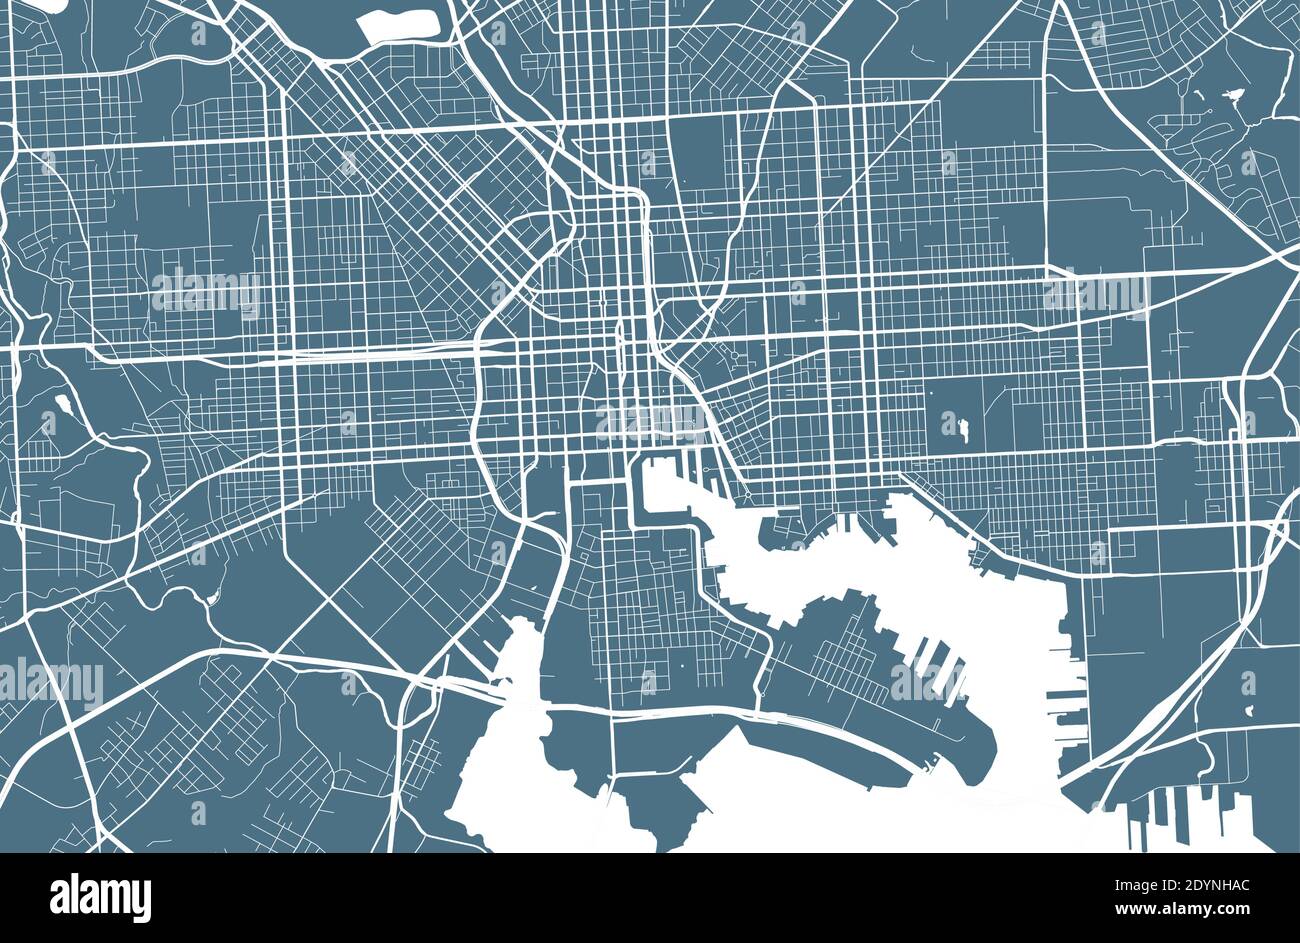 Carte détaillée du quartier administratif de Baltimore. Illustration vectorielle libre de droits. Panorama urbain. Carte graphique touristique décorative de Baltimore Illustration de Vecteur